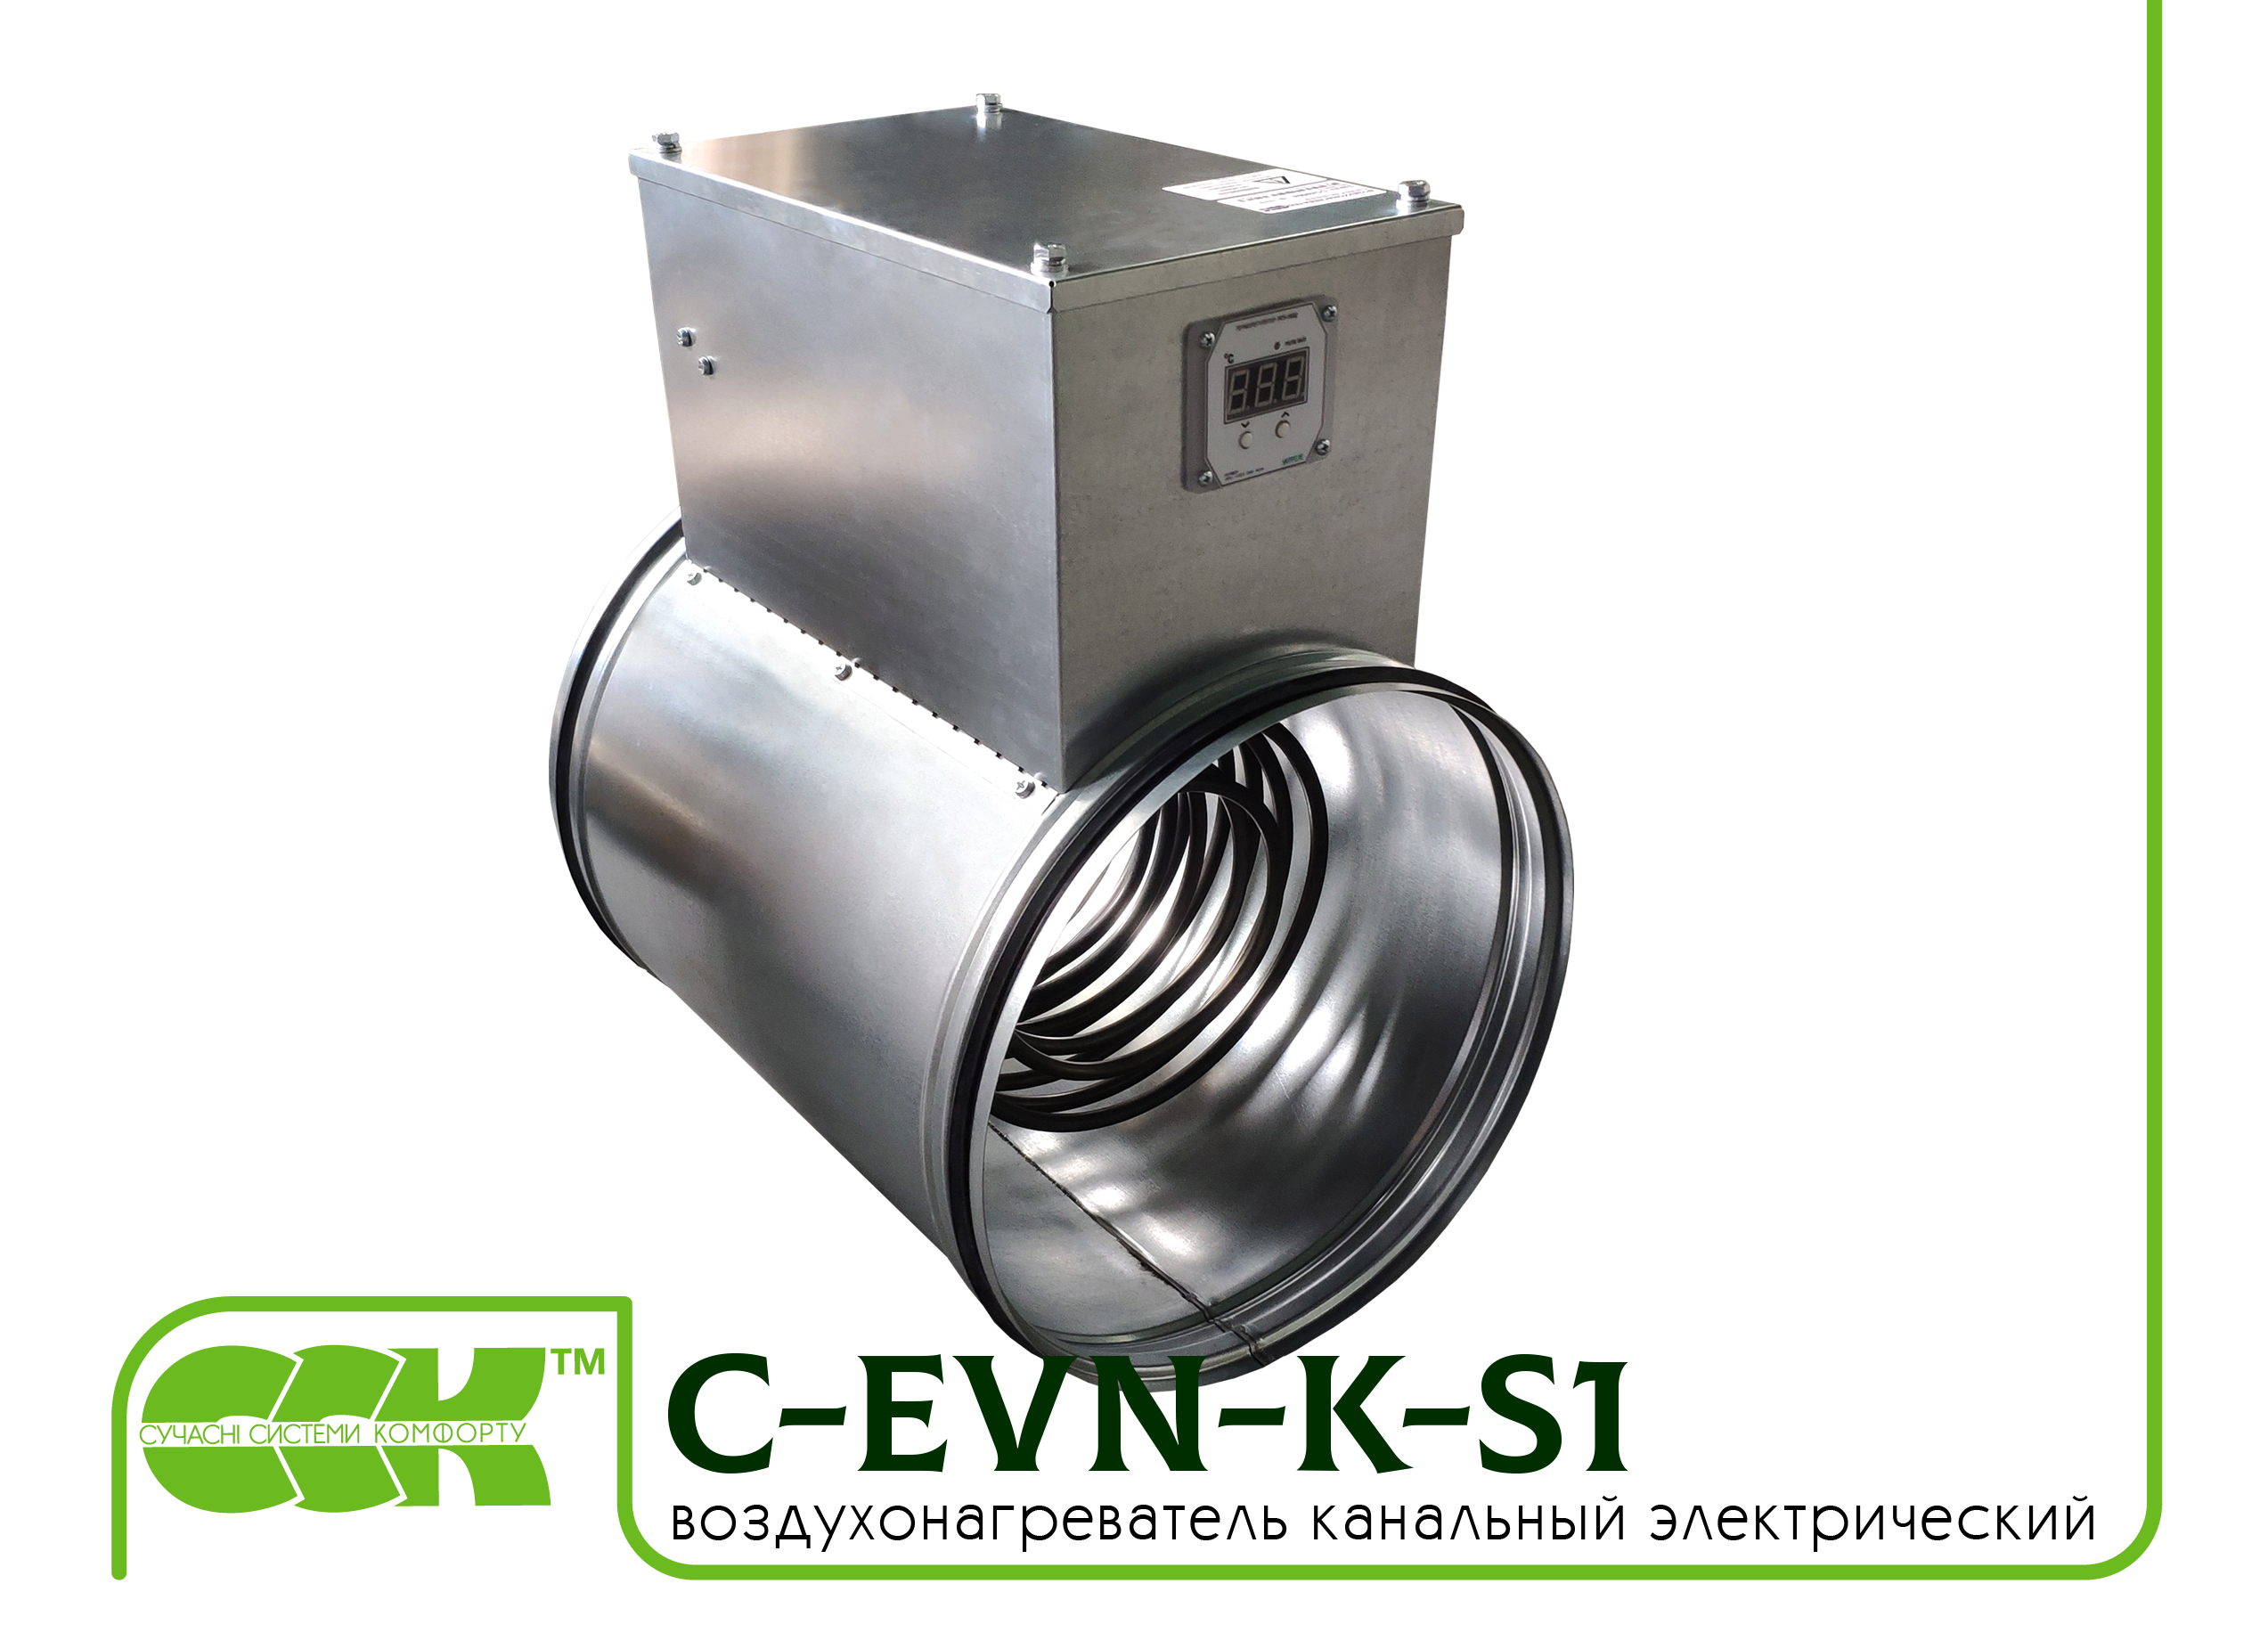 Воздухонагреватель канальный электрический для круглых каналов C-EVN-K-S1-315-15,0